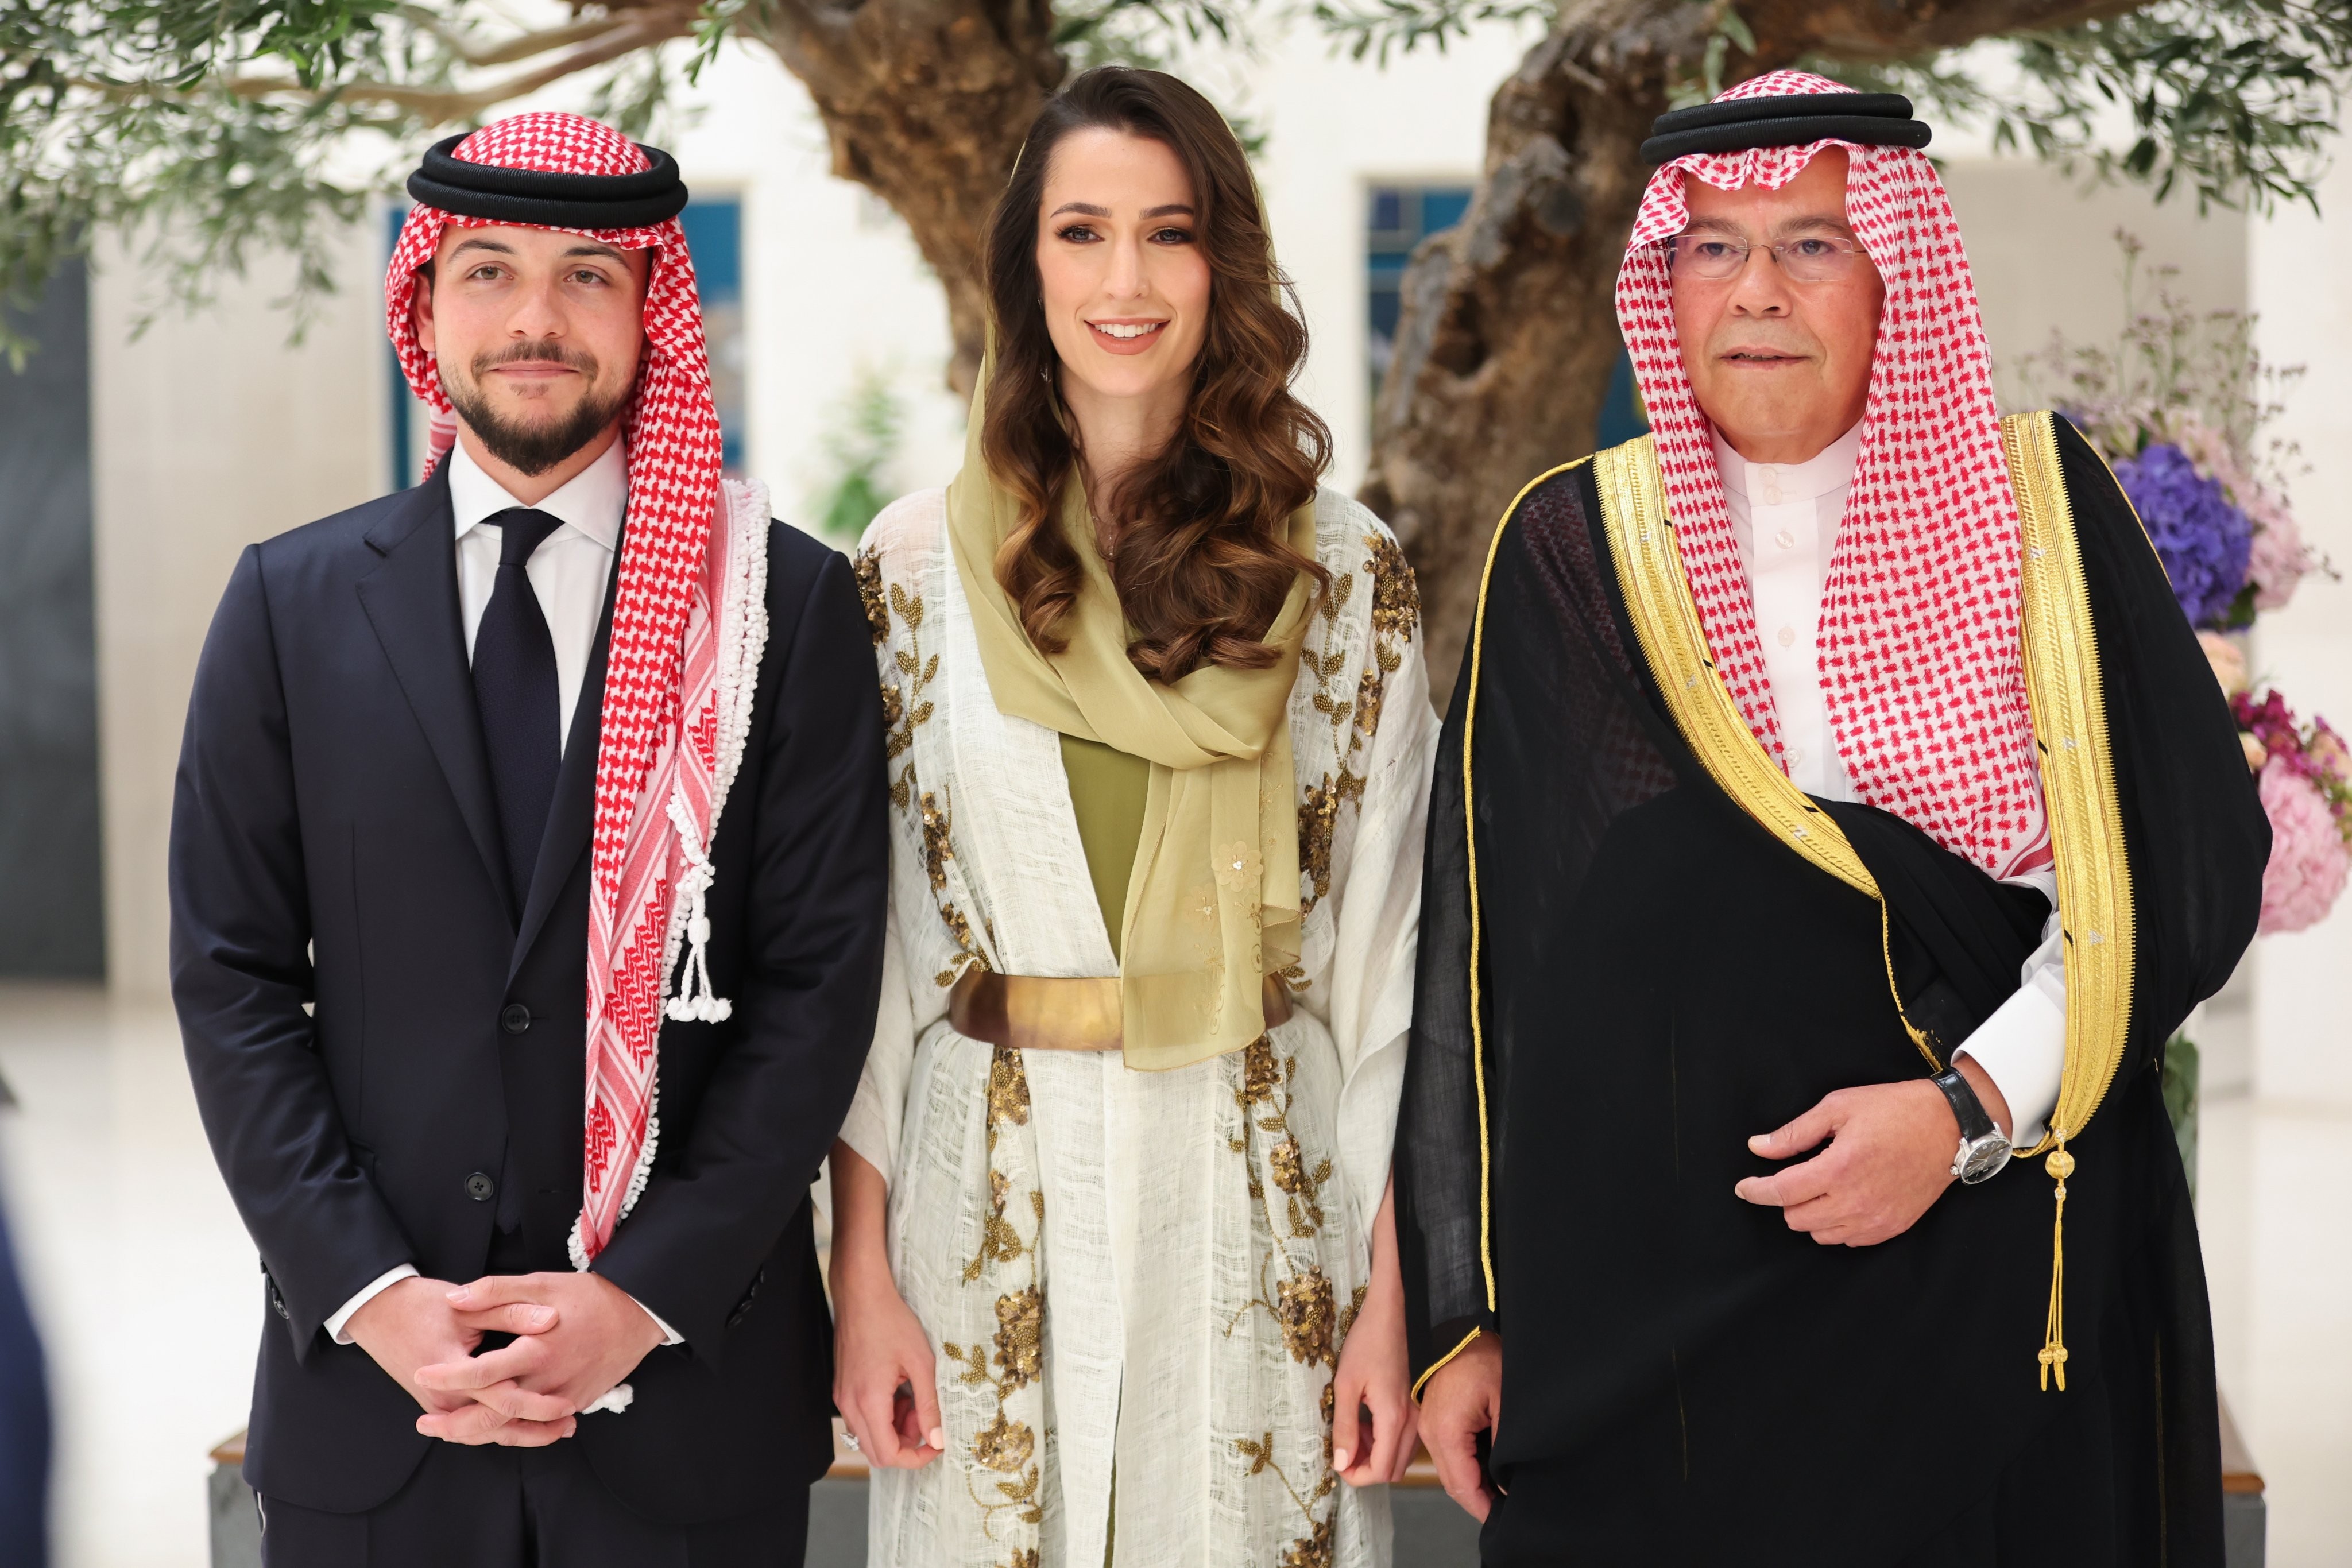 صور عقد قران ولي العهد الأردني الحسين بن عبدالله الثاني على فتاة سعودية 2022.jfif